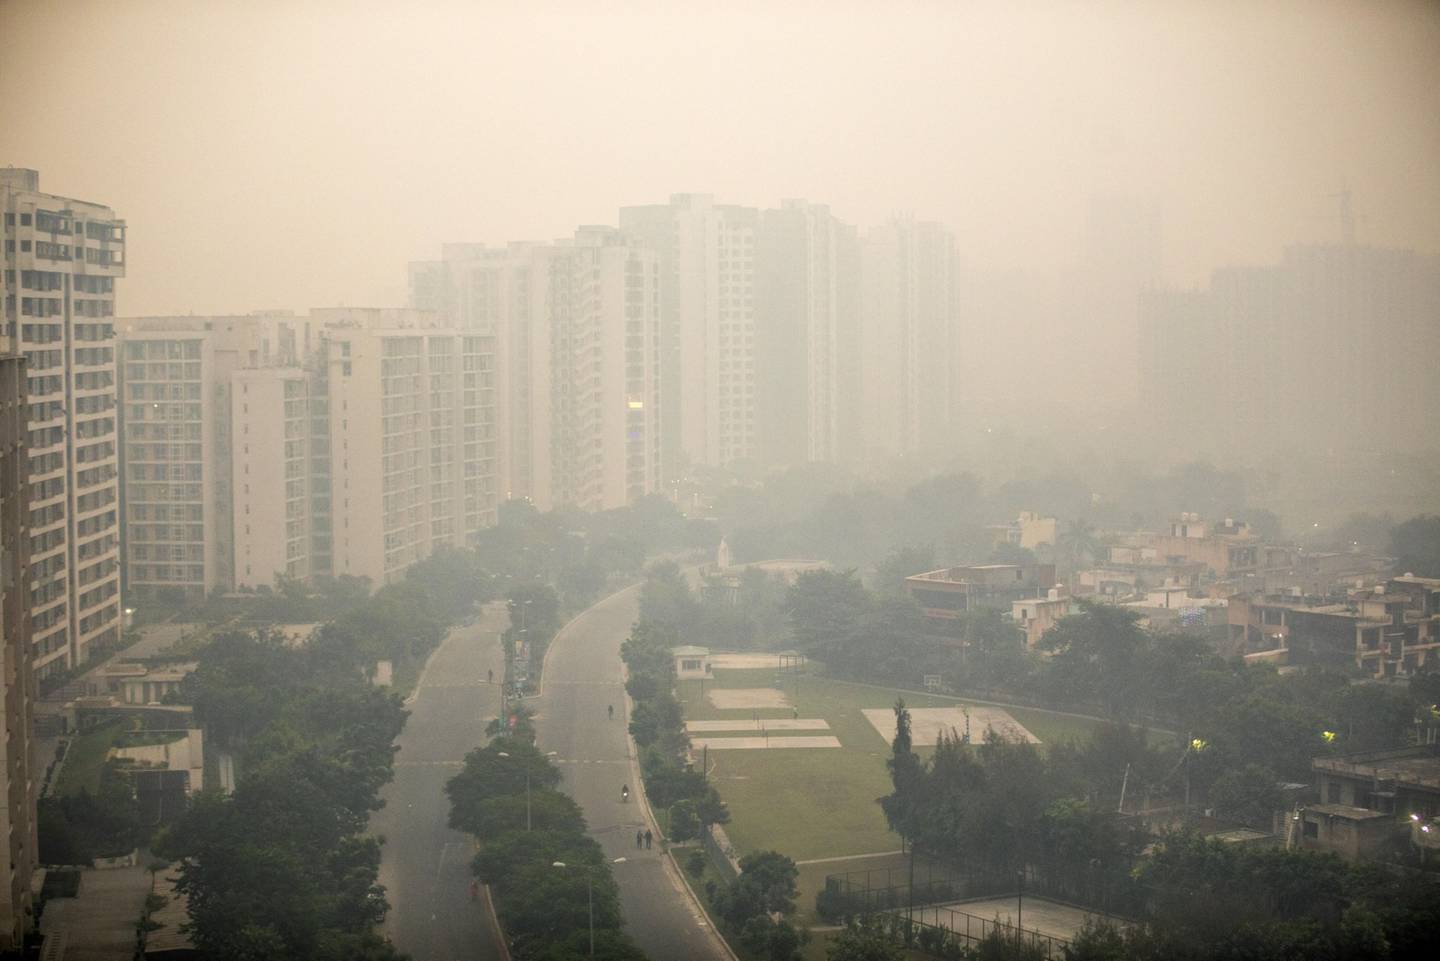 Edificios envueltos en smog en Noida, Uttar Pradesh, India, el martes 9 de noviembre de 2021. El aire tóxico ha envuelto a la capital de la India y sus alrededores, convirtiéndola en la ciudad más contaminada del planeta. Fotógrafo: Prashanth Vishwanathan /Bloombergdfd